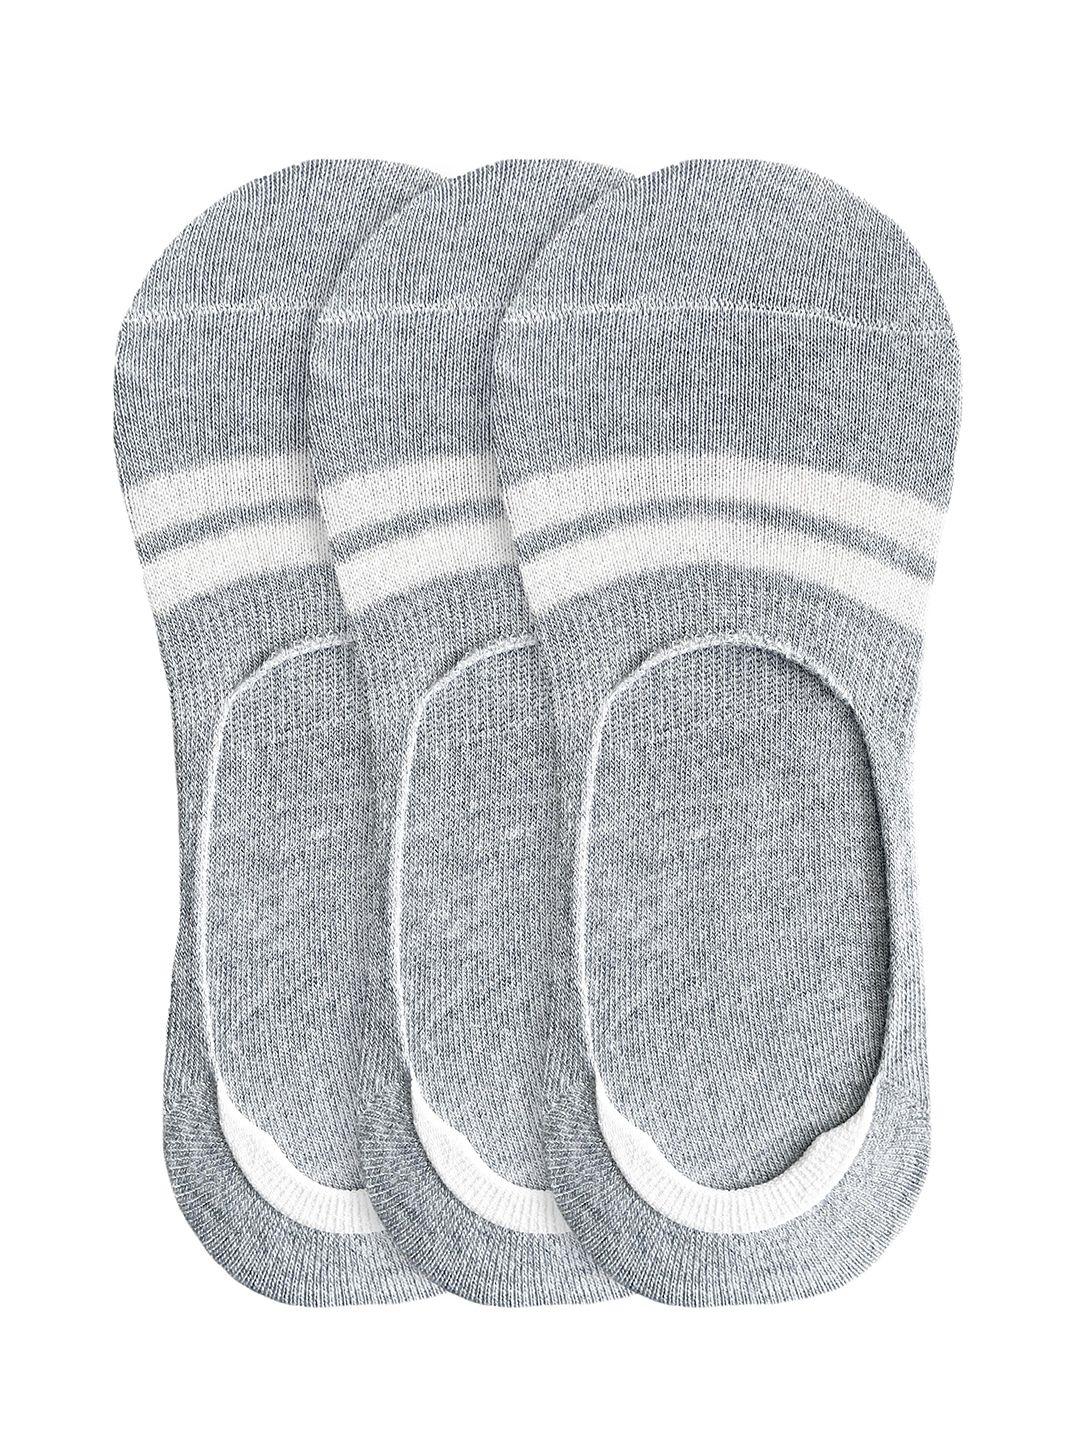 heelium men grey striped set of 3 shoe liners